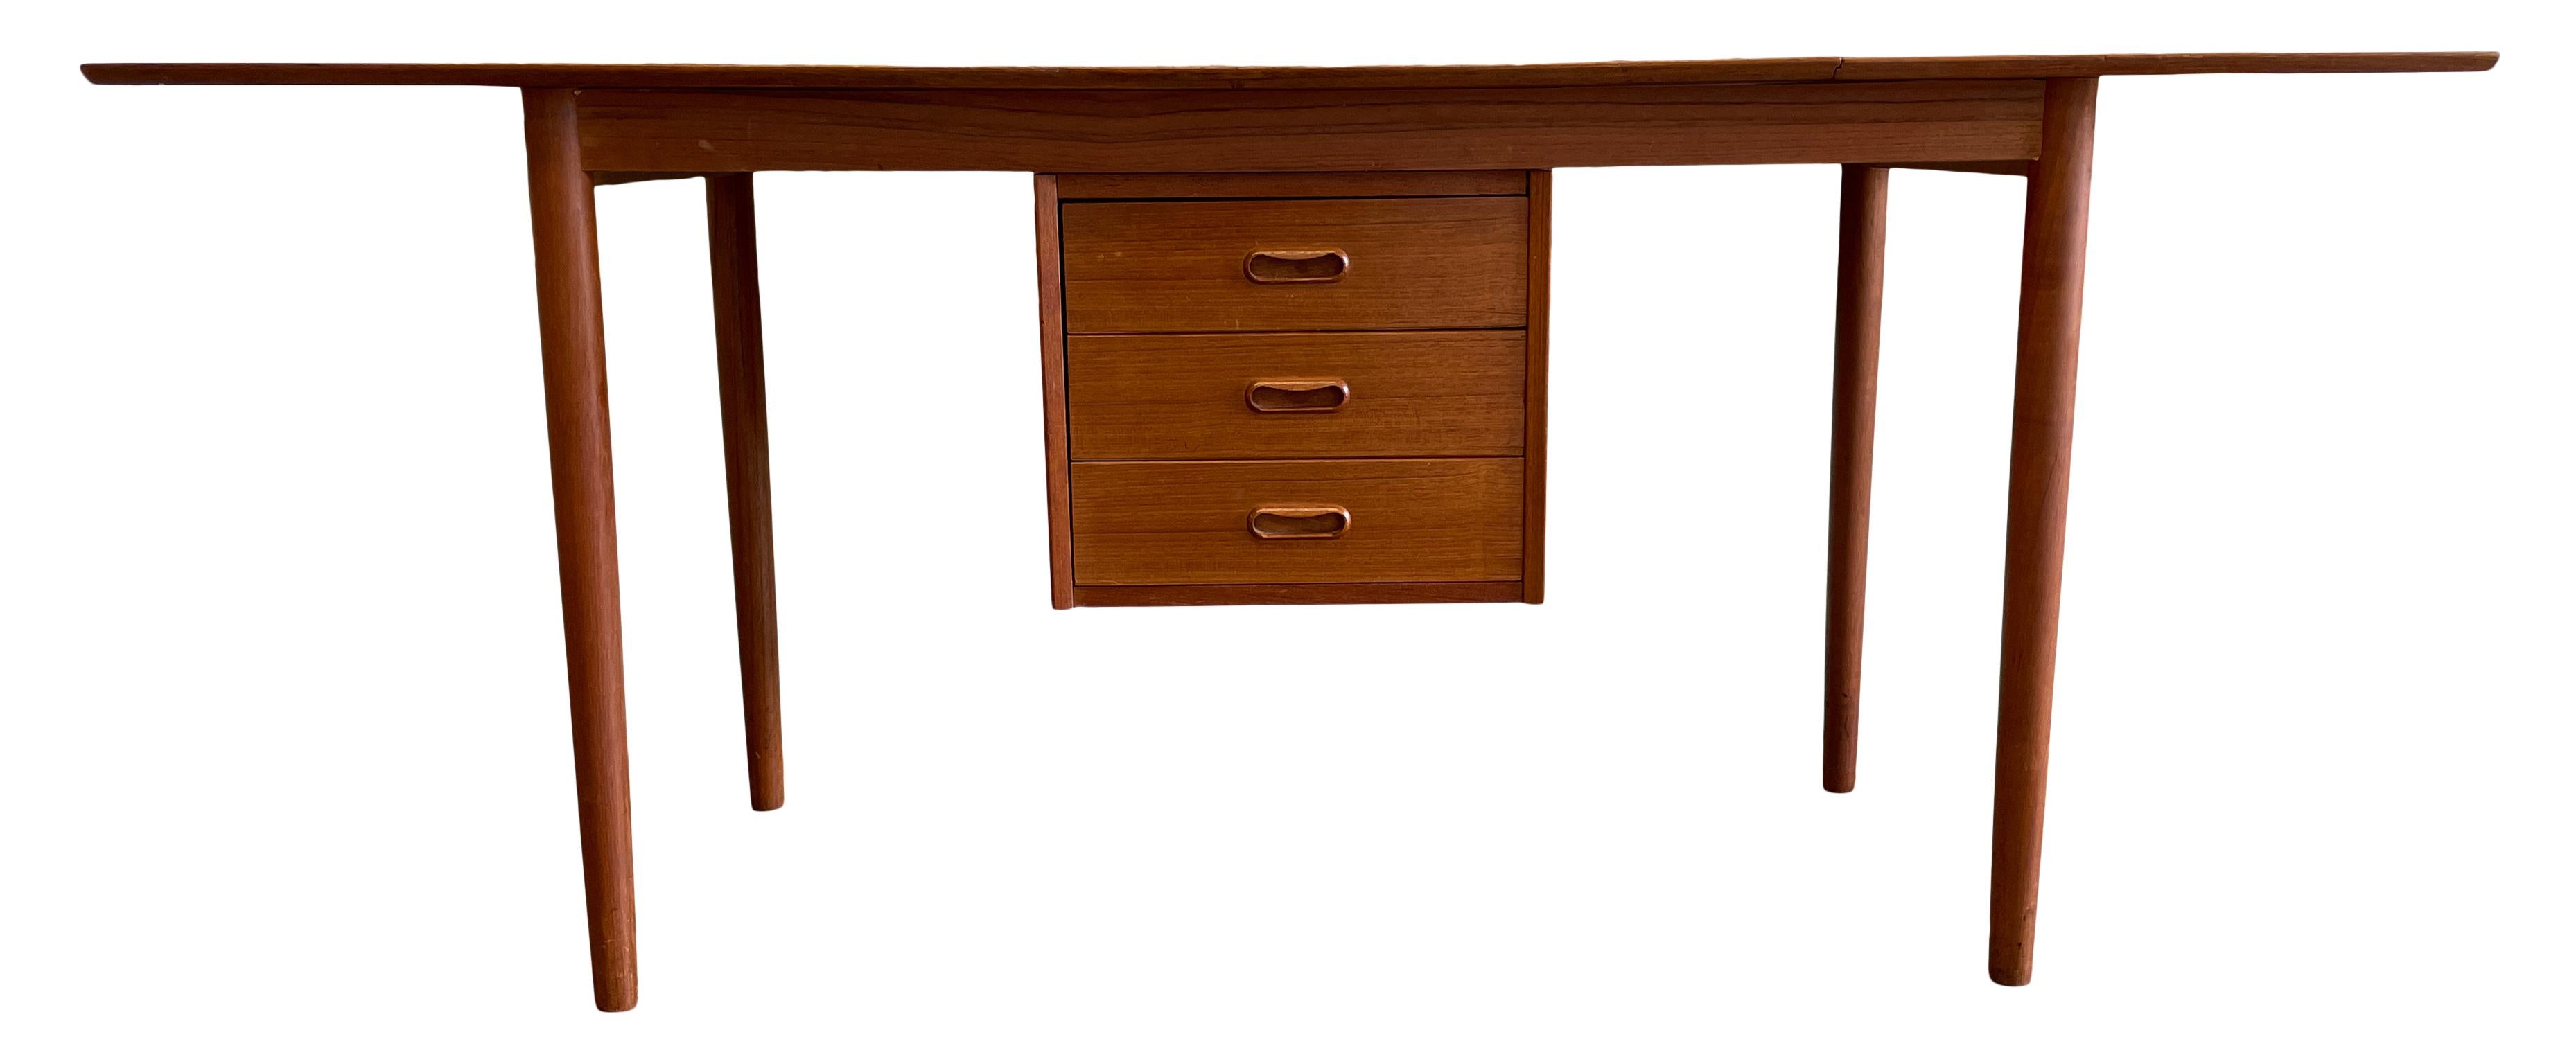 Mid Century Danish Modern Arne Vodder Teak Drop Leaf Desk for H.Sigh Denmark For Sale 6